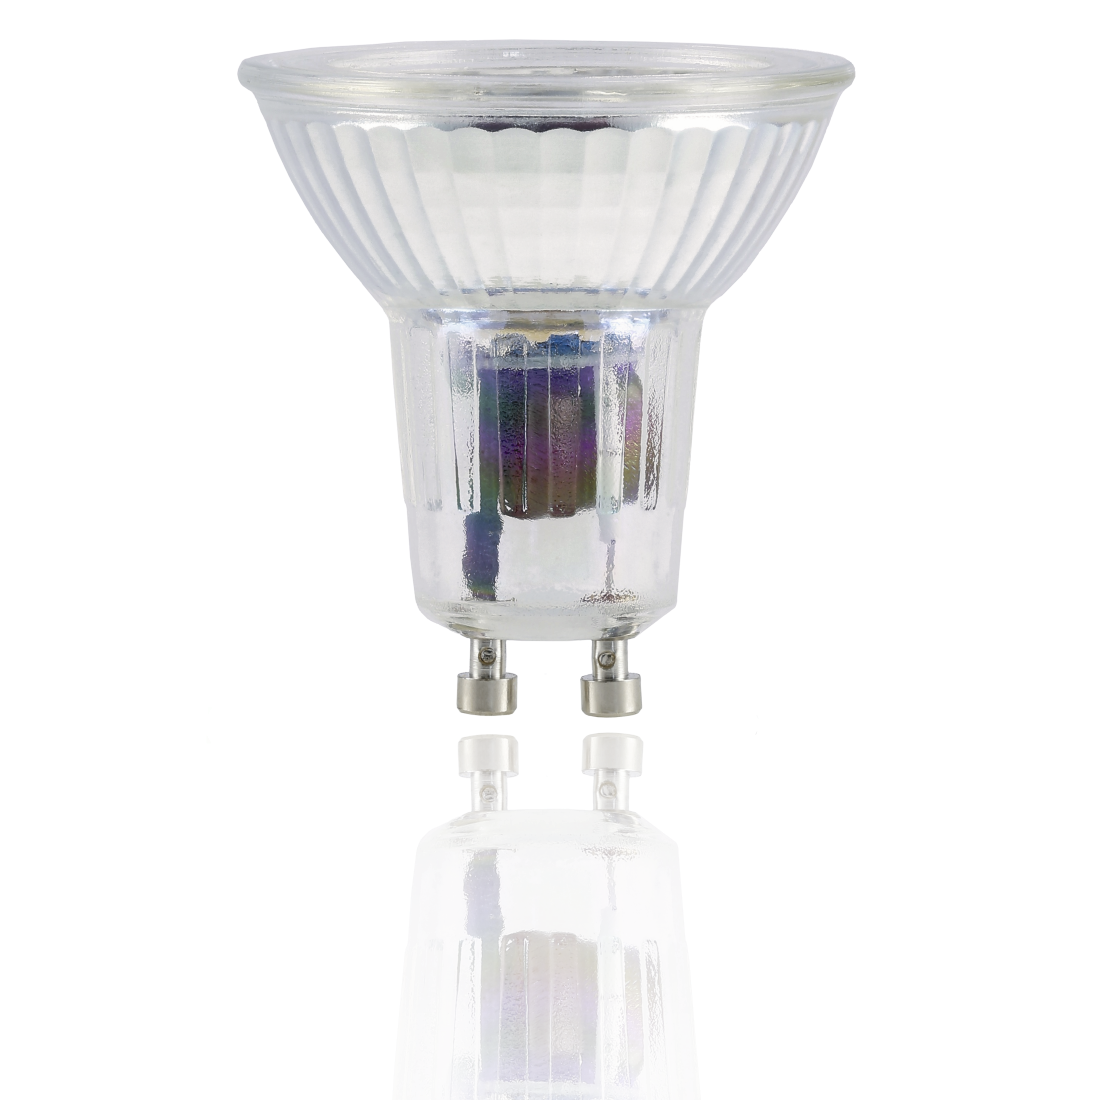 abx2 High-Res Image 2 - Xavax, Ampoule LED, GU10, 350lm rempl 50W, réfl. PAR16, blc chd, verre, intensité